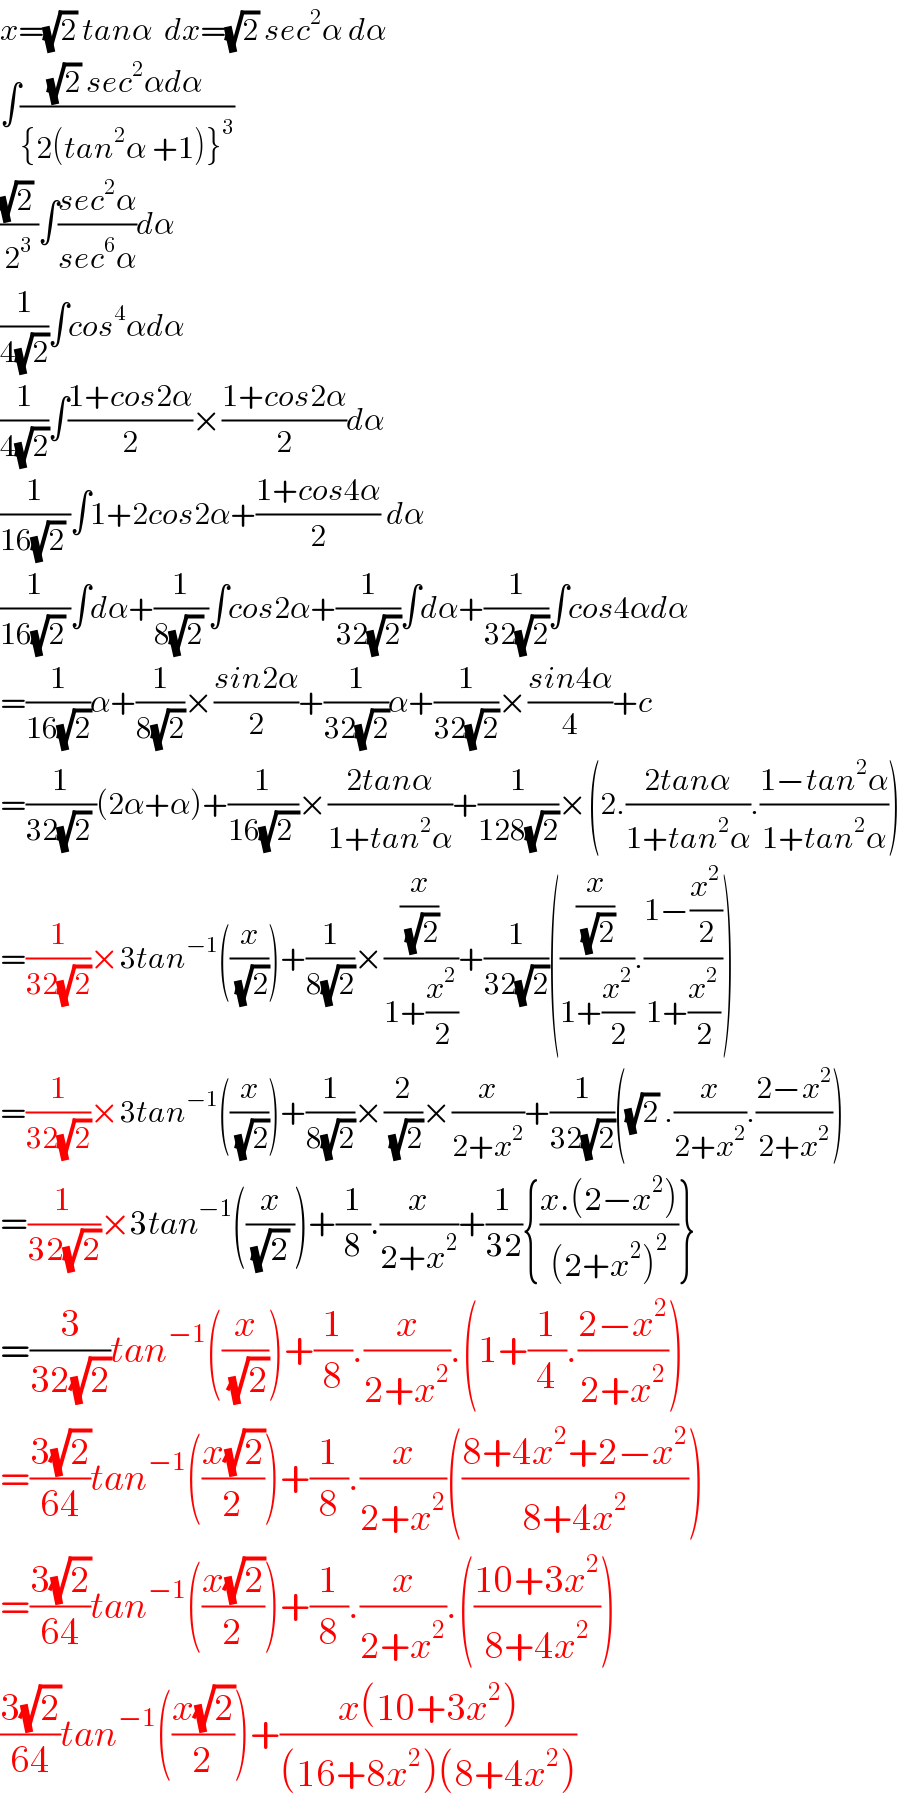 x=(√2) tanα  dx=(√2) sec^2 α dα  ∫(((√2) sec^2 αdα)/({2(tan^2 α +1)}^3 ))  (((√2) )/2^3 )∫((sec^2 α)/(sec^6 α))dα  (1/(4(√2)))∫cos^4 αdα  (1/(4(√2)))∫((1+cos2α)/2)×((1+cos2α)/2)dα  (1/(16(√2) ))∫1+2cos2α+((1+cos4α)/2) dα  (1/(16(√2) ))∫dα+(1/(8(√2) ))∫cos2α+(1/(32(√2)))∫dα+(1/(32(√2)))∫cos4αdα  =(1/(16(√2)))α+(1/(8(√2)))×((sin2α)/2)+(1/(32(√2)))α+(1/(32(√2)))×((sin4α)/4)+c  =(1/(32(√2) ))(2α+α)+(1/(16(√(2 ))))×((2tanα)/(1+tan^2 α))+(1/(128(√2)))×(2.((2tanα)/(1+tan^2 α)).((1−tan^2 α)/(1+tan^2 α)))  =(1/(32(√2)))×3tan^(−1) ((x/(√2)))+(1/(8(√2)))×((x/(√2))/(1+(x^2 /2)))+(1/(32(√2)))(((x/(√2))/(1+(x^2 /2))).((1−(x^2 /2))/(1+(x^2 /2))))  =(1/(32(√2)))×3tan^(−1) ((x/(√2)))+(1/(8(√2)))×(2/(√2))×(x/(2+x^2 ))+(1/(32(√2)))((√2) .(x/(2+x^2 )).((2−x^2 )/(2+x^2 )))  =(1/(32(√2)))×3tan^(−1) ((x/((√2) )))+(1/8).(x/(2+x^2 ))+(1/(32)){((x.(2−x^2 ))/((2+x^2 )^2 ))}  =(3/(32(√2)))tan^(−1) ((x/(√2)))+(1/8).(x/(2+x^2 )).(1+(1/4).((2−x^2 )/(2+x^2 )))  =((3(√2))/(64))tan^(−1) (((x(√2))/2))+(1/8).(x/(2+x^2 ))(((8+4x^2 +2−x^2 )/(8+4x^2 )))  =((3(√2))/(64))tan^(−1) (((x(√2))/2))+(1/8).(x/(2+x^2 )).(((10+3x^2 )/(8+4x^2 )))  ((3(√2))/(64))tan^(−1) (((x(√2))/2))+((x(10+3x^2 ))/((16+8x^2 )(8+4x^2 )))  